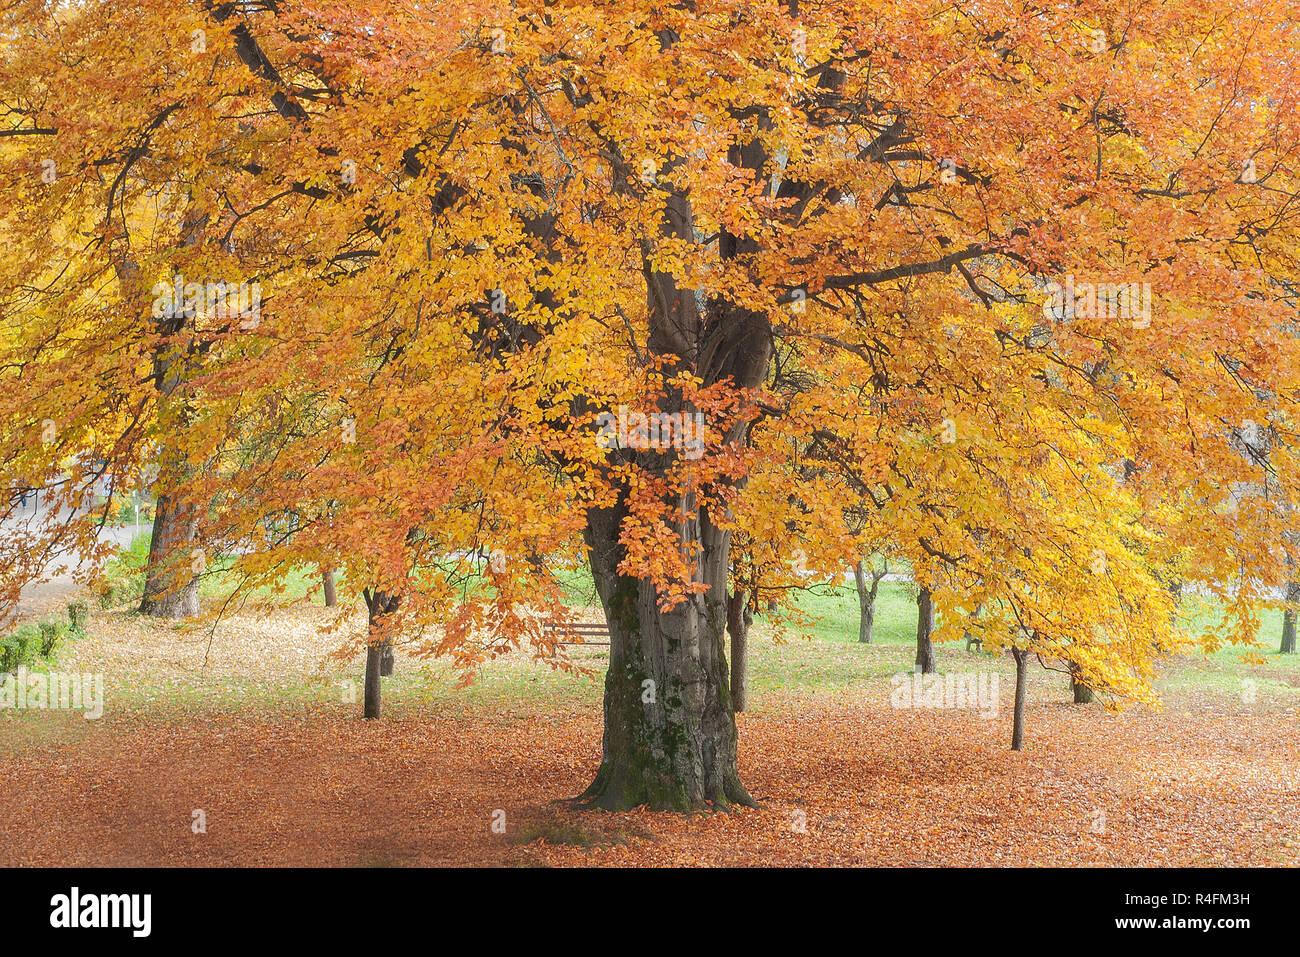 Autumn in park Stock Photo